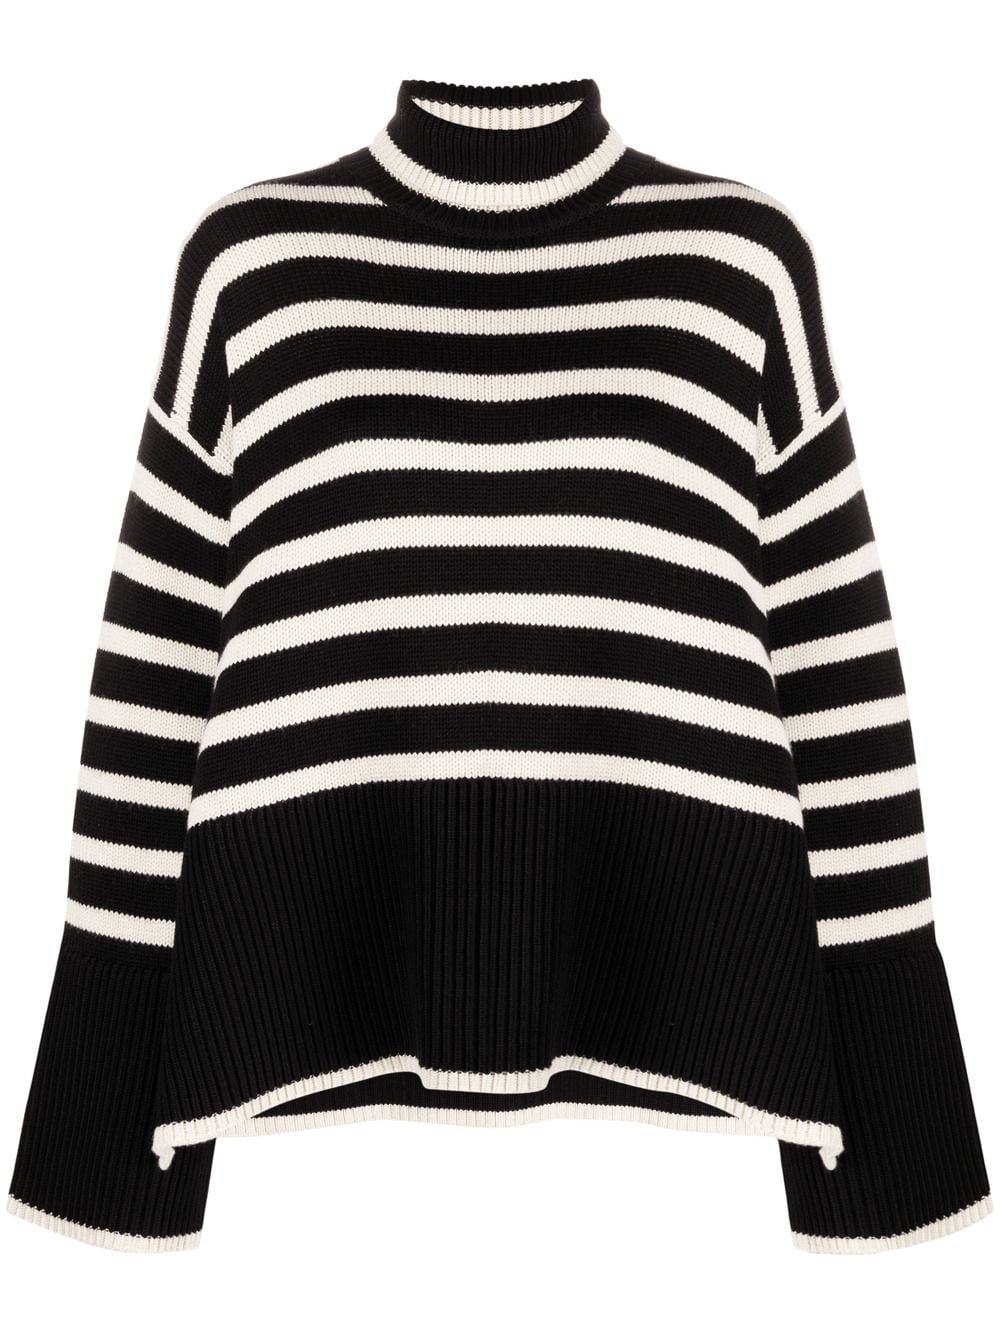 Striped wool turtleneck sweater - 1